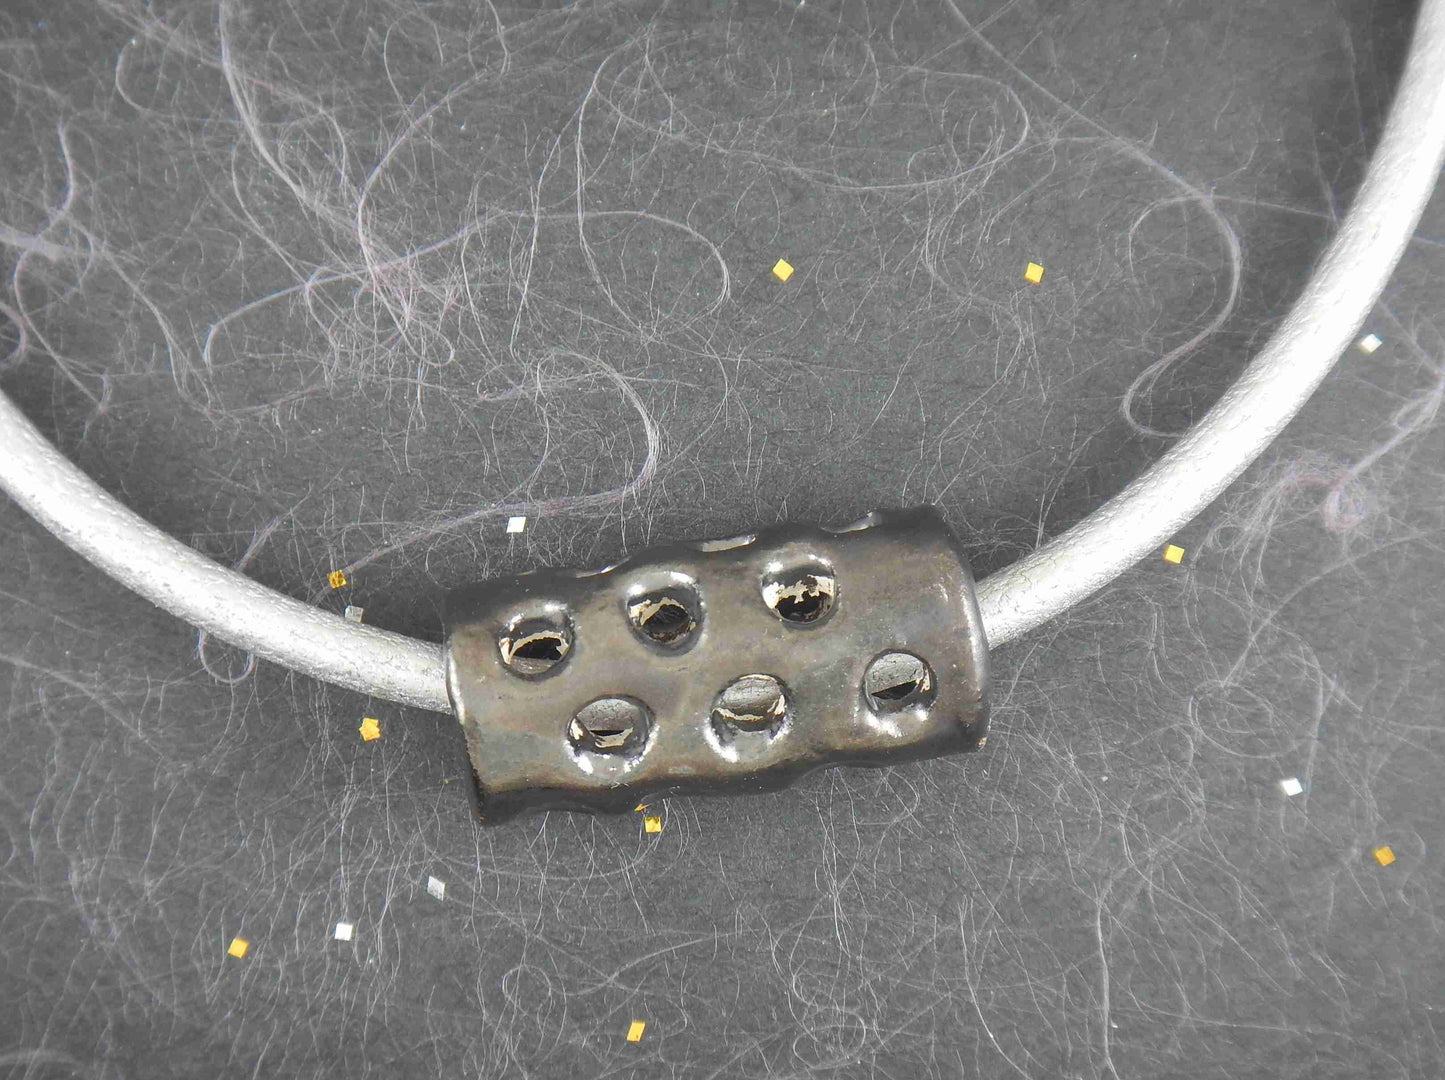 Collier tour de cou avec cylindre de céramique nickel noir fait main à Montréal, motifs de trous, cordon de cuir argenté métallisé, fermoir acier inoxydable